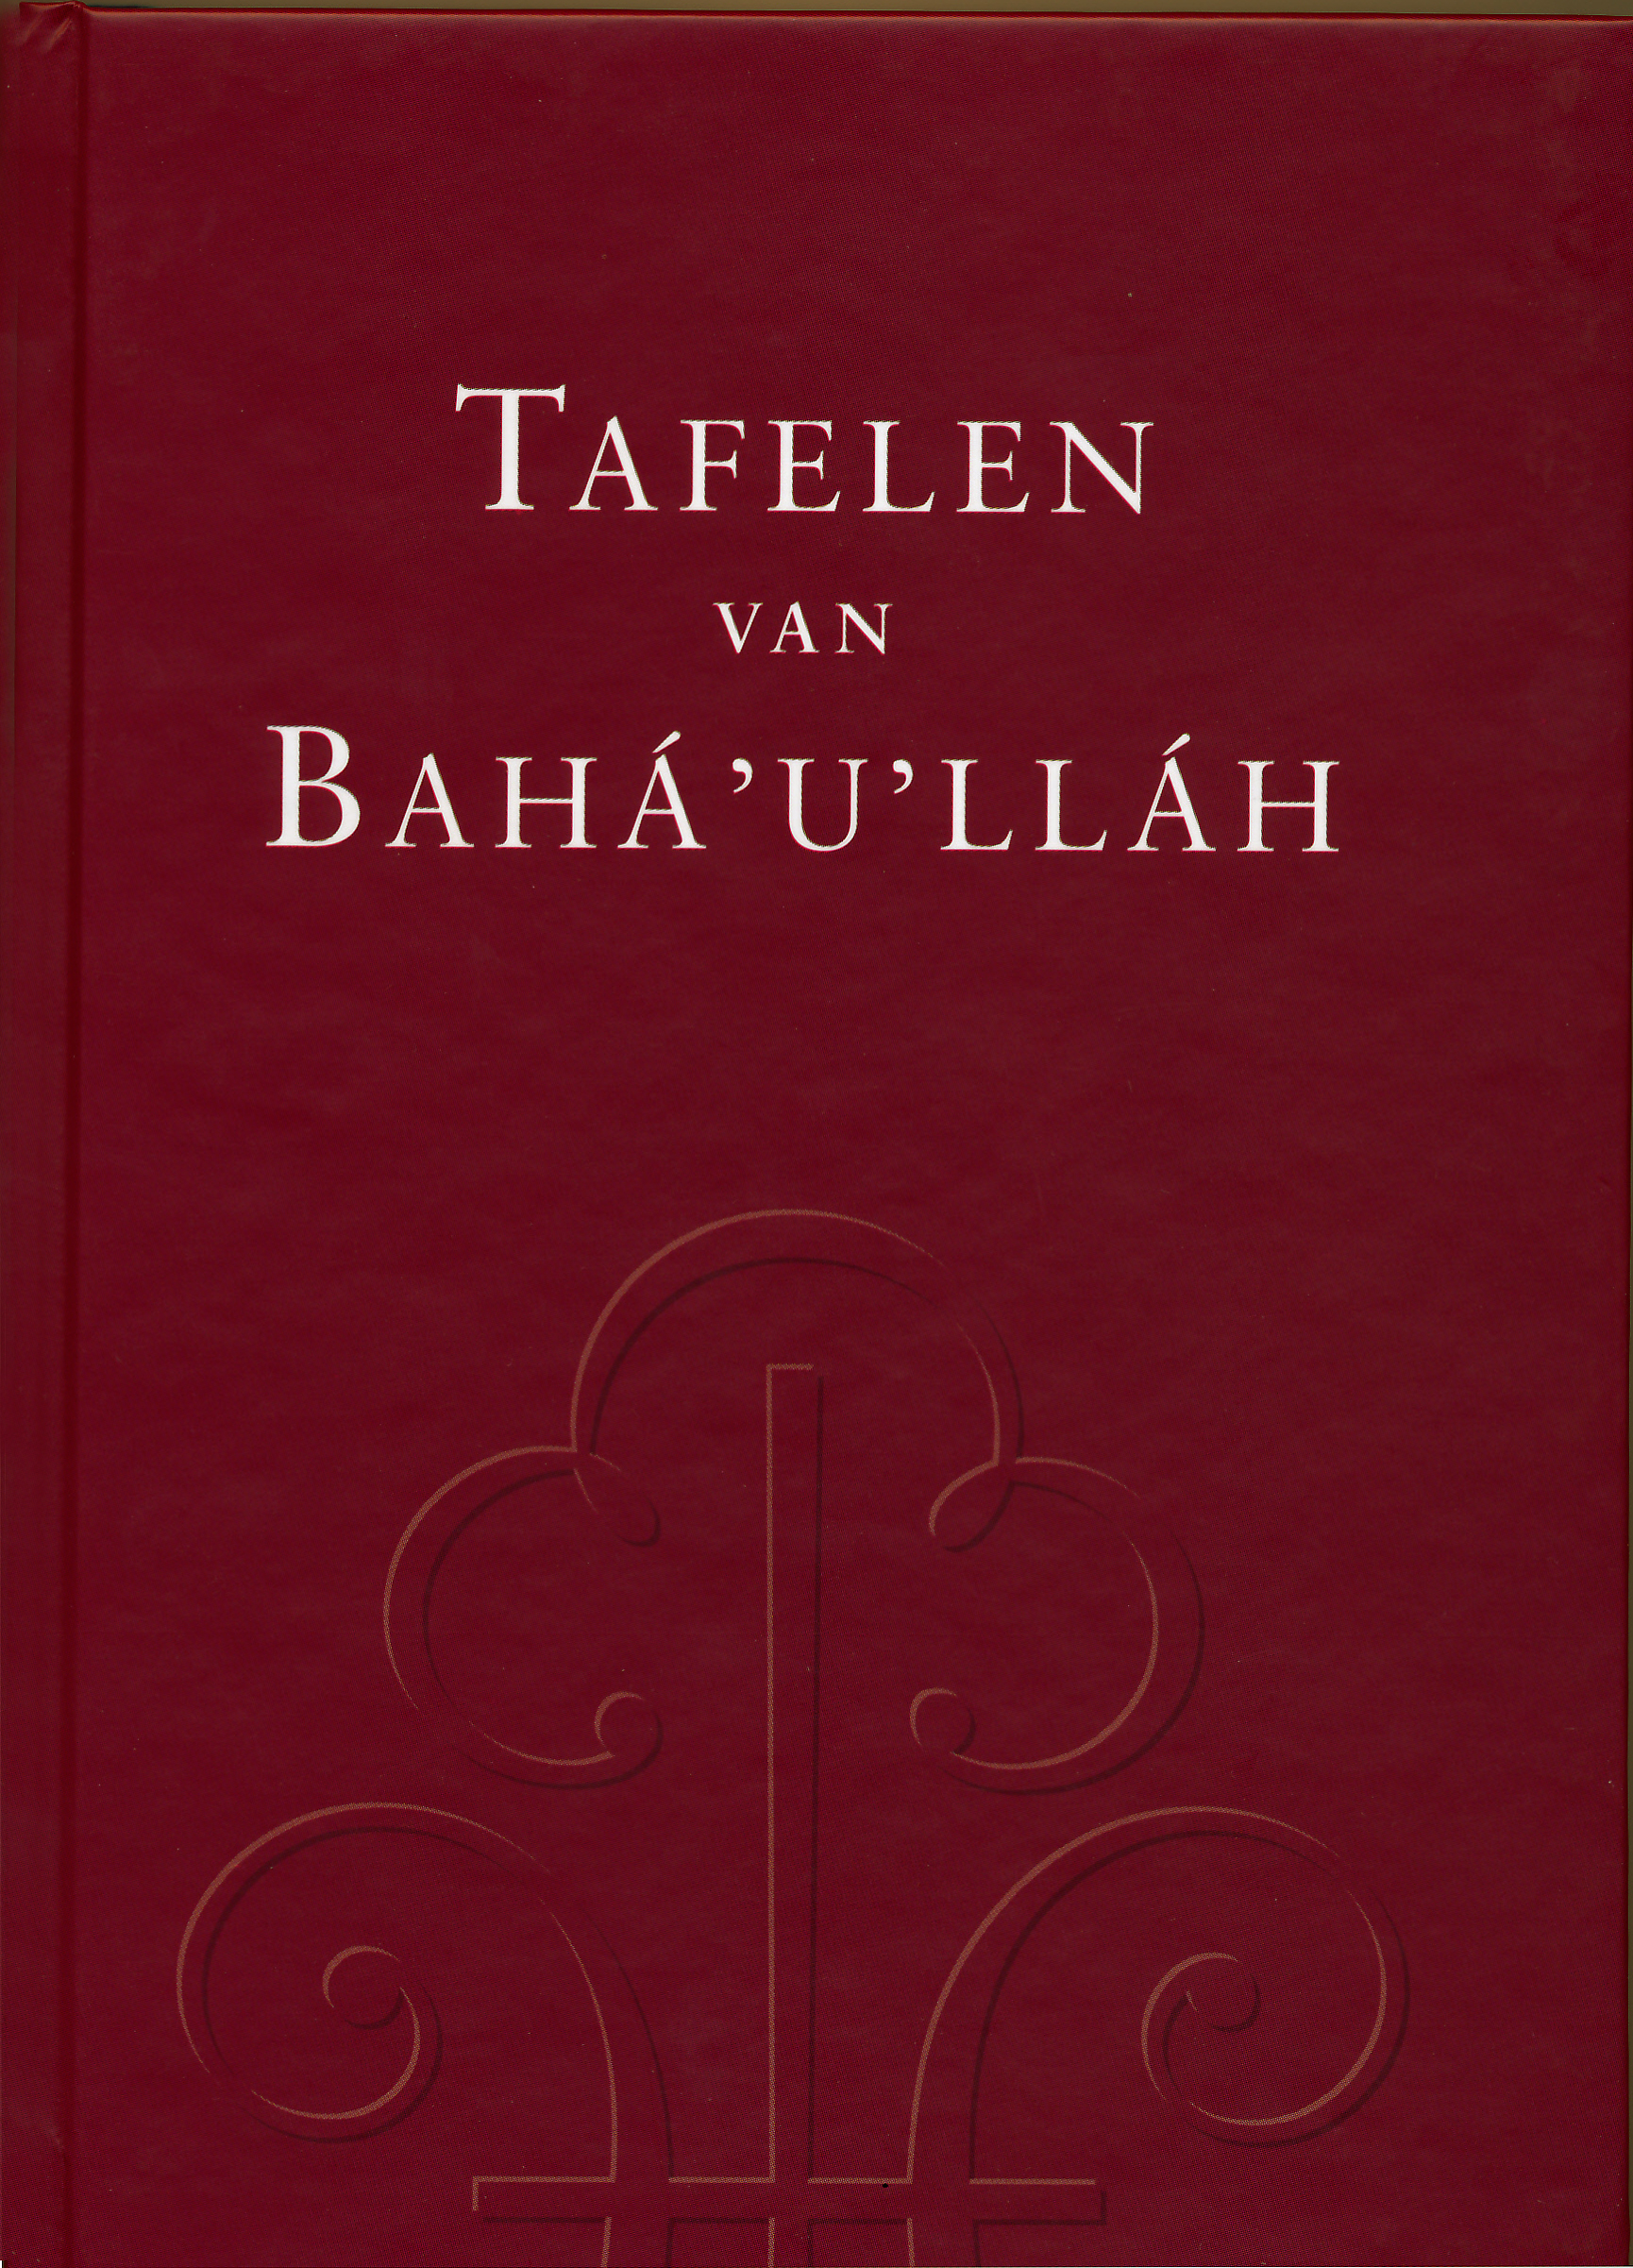 Tafelen van Bahá'u'lláh